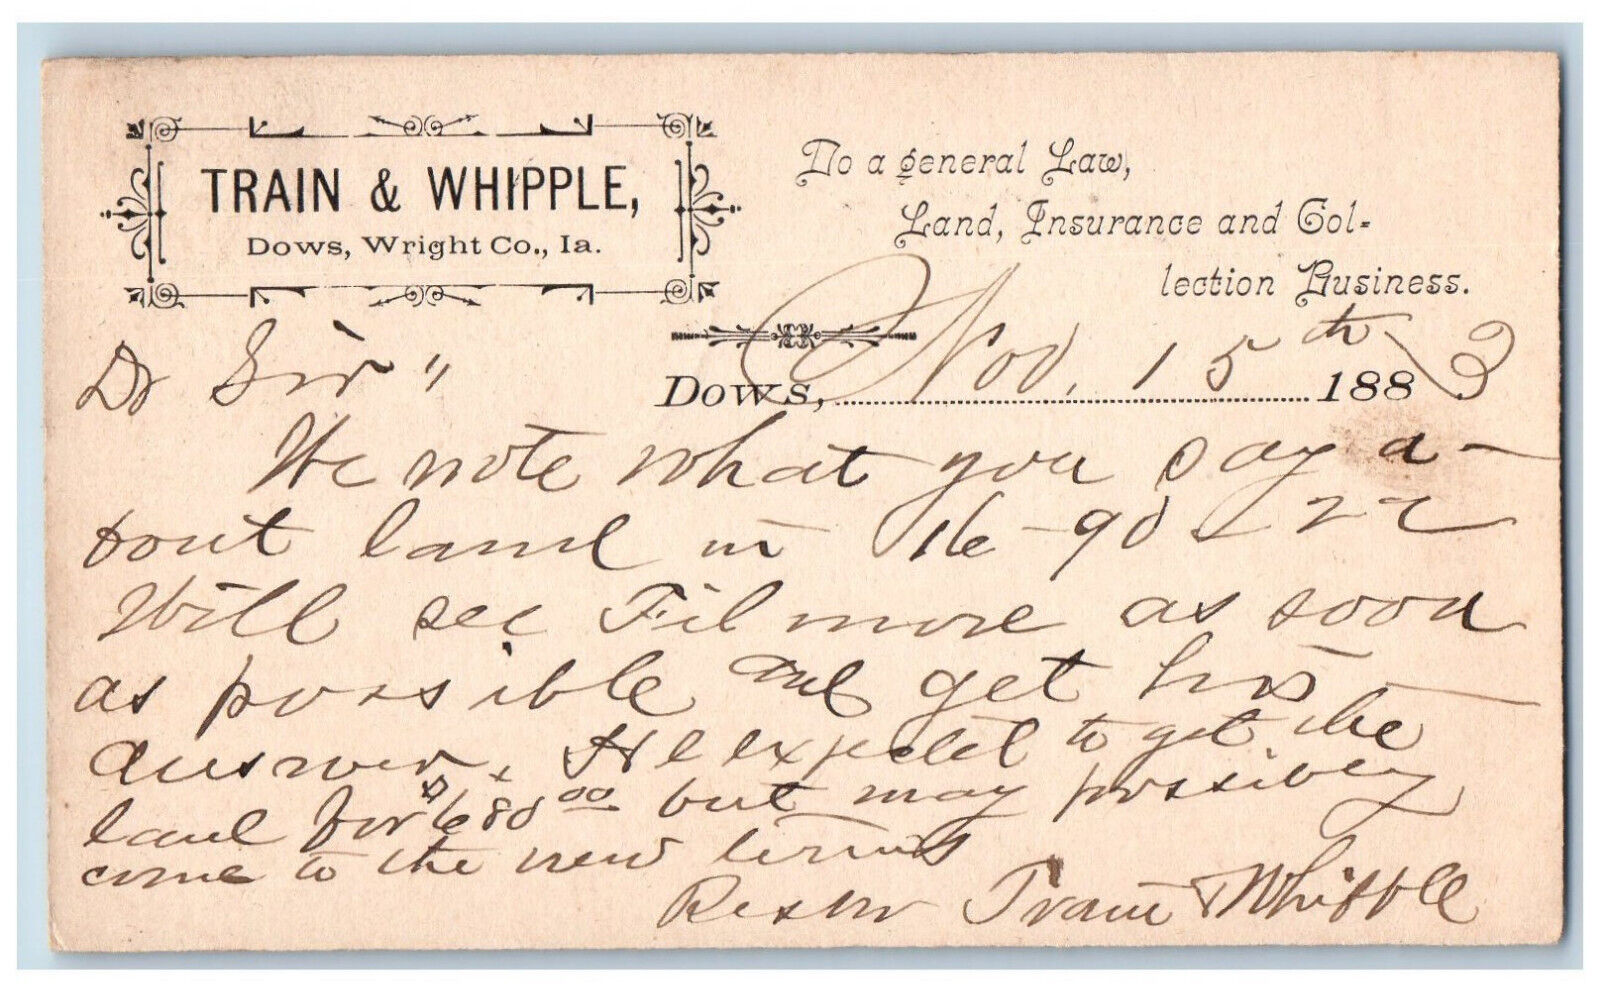 Wright Co. Iowa IA Iowa Falls IA Postal Card Train & Whipple Dows 1883 Posted